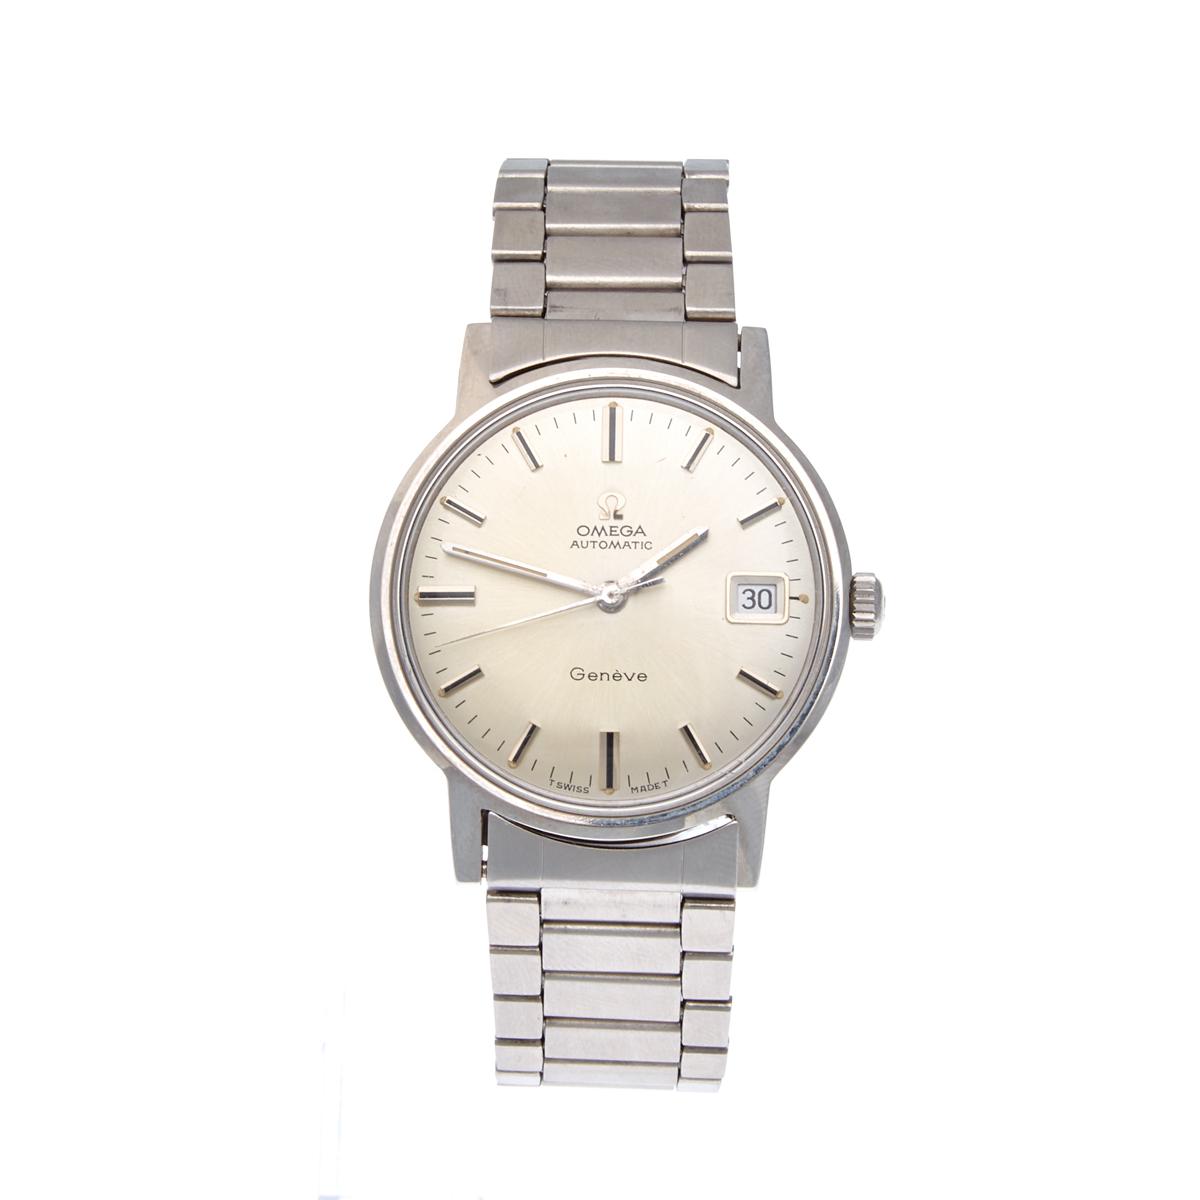 Omega Wristwatch - Price Estimate: $800 - $1400